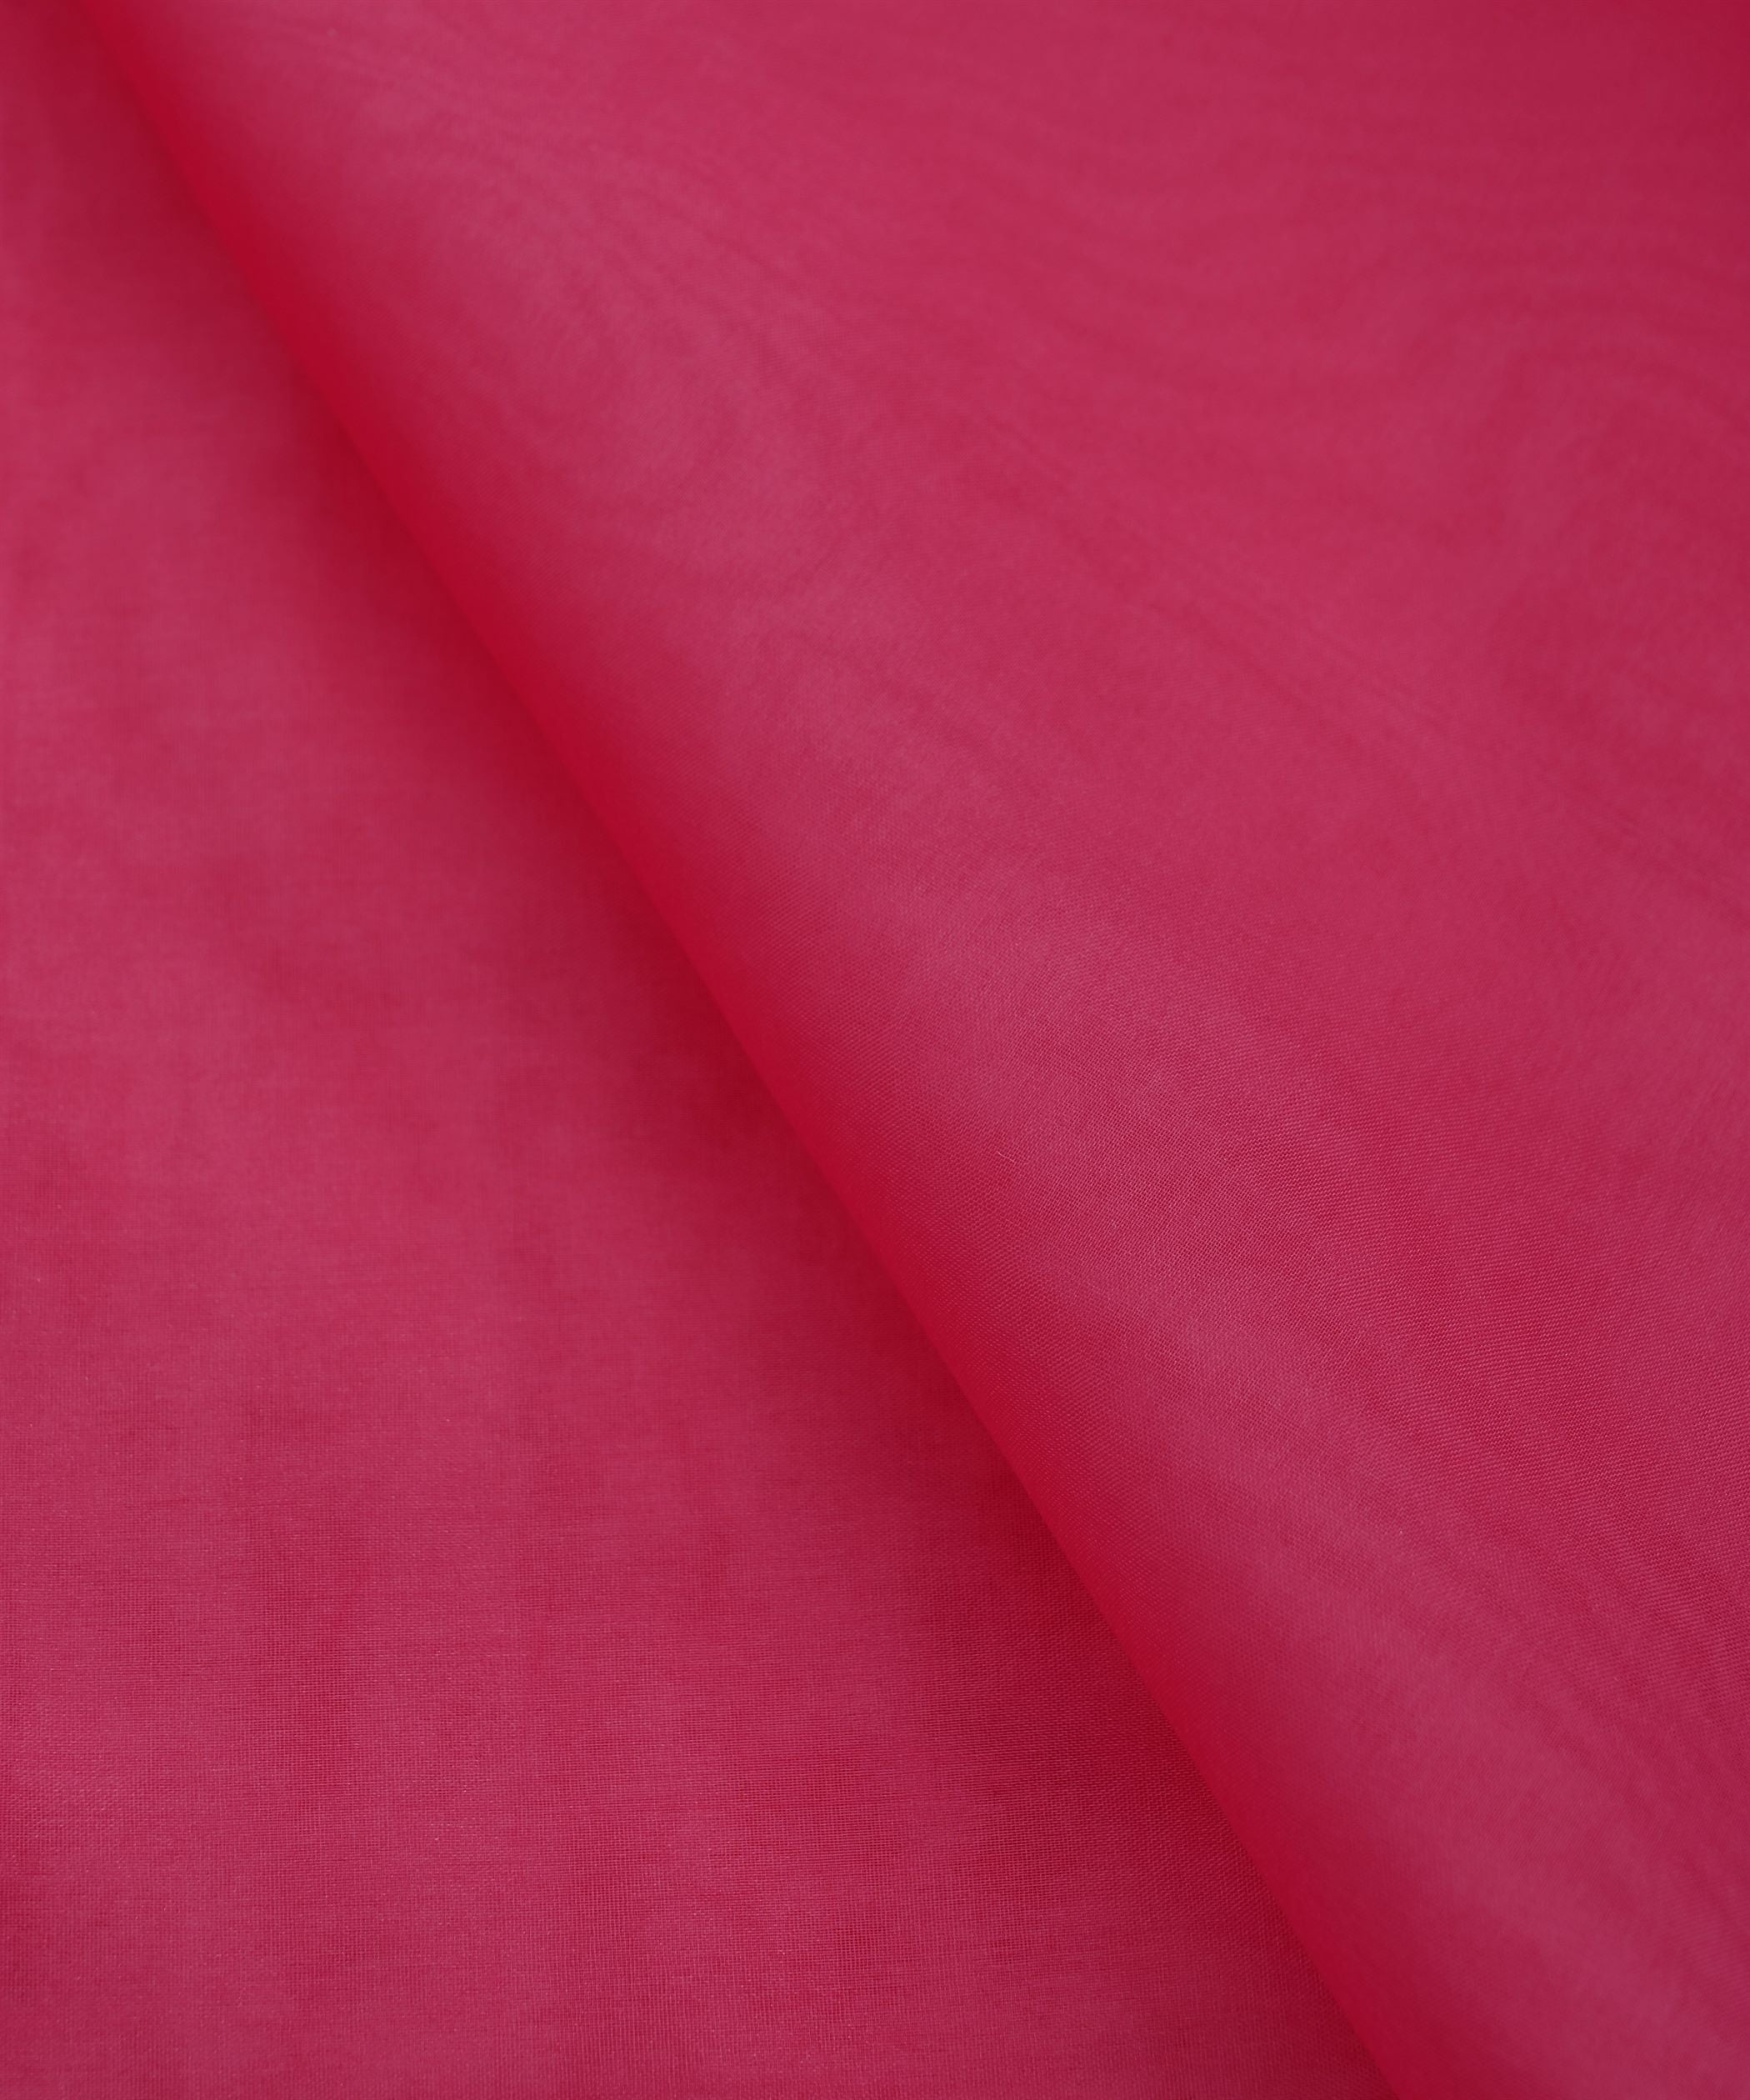 Fuschia Pink Plain Dyed Organza Fabric